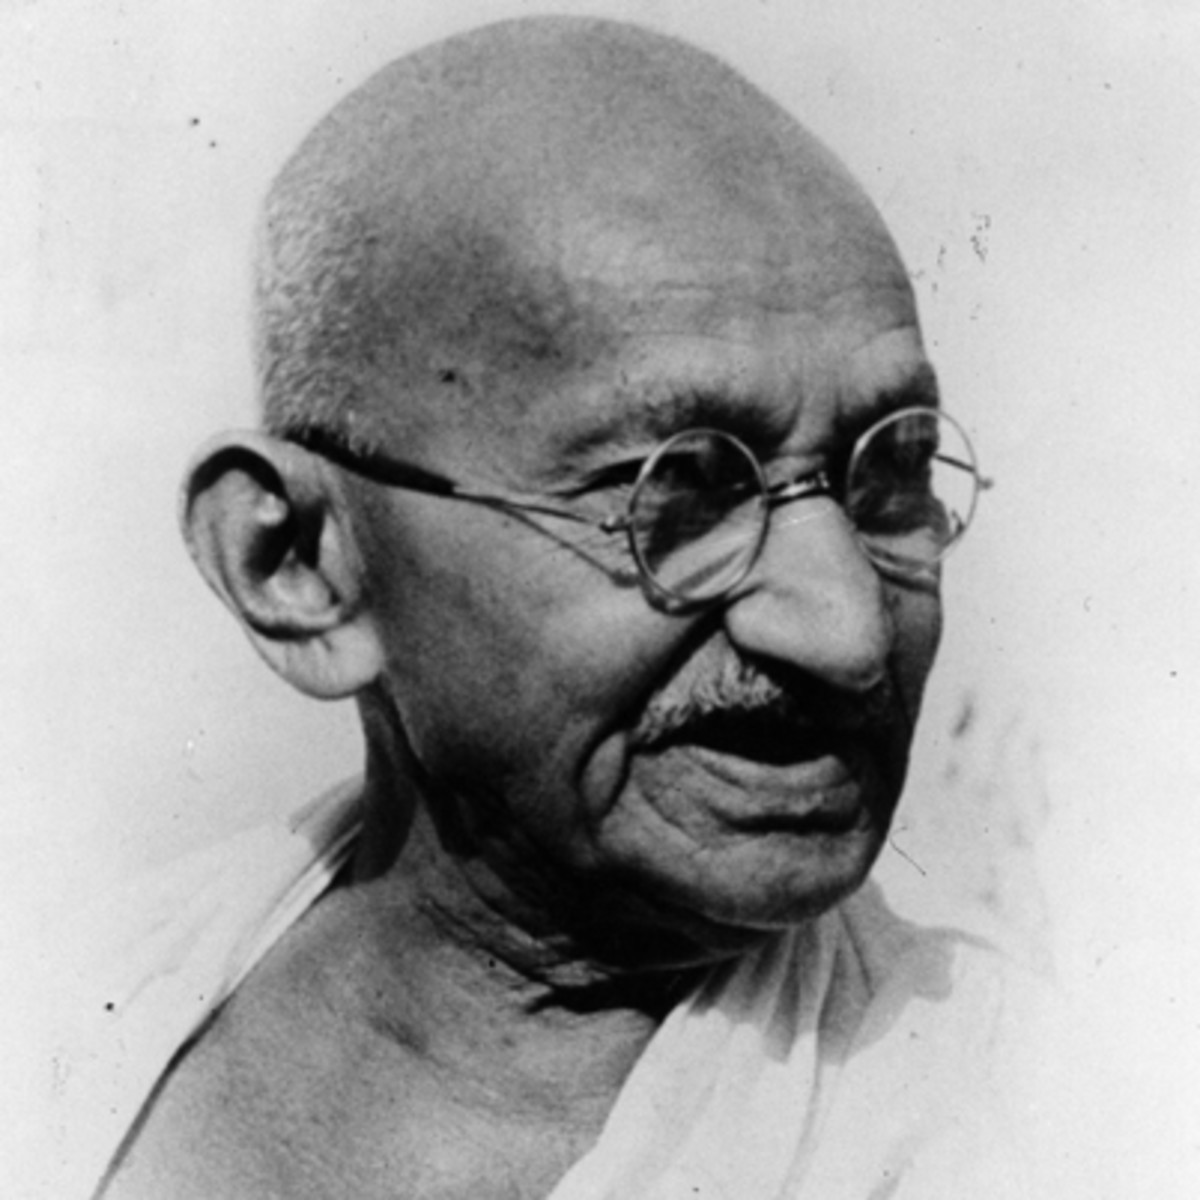 Famous portrait of Mahatma Gandhi, the famous Indian leader